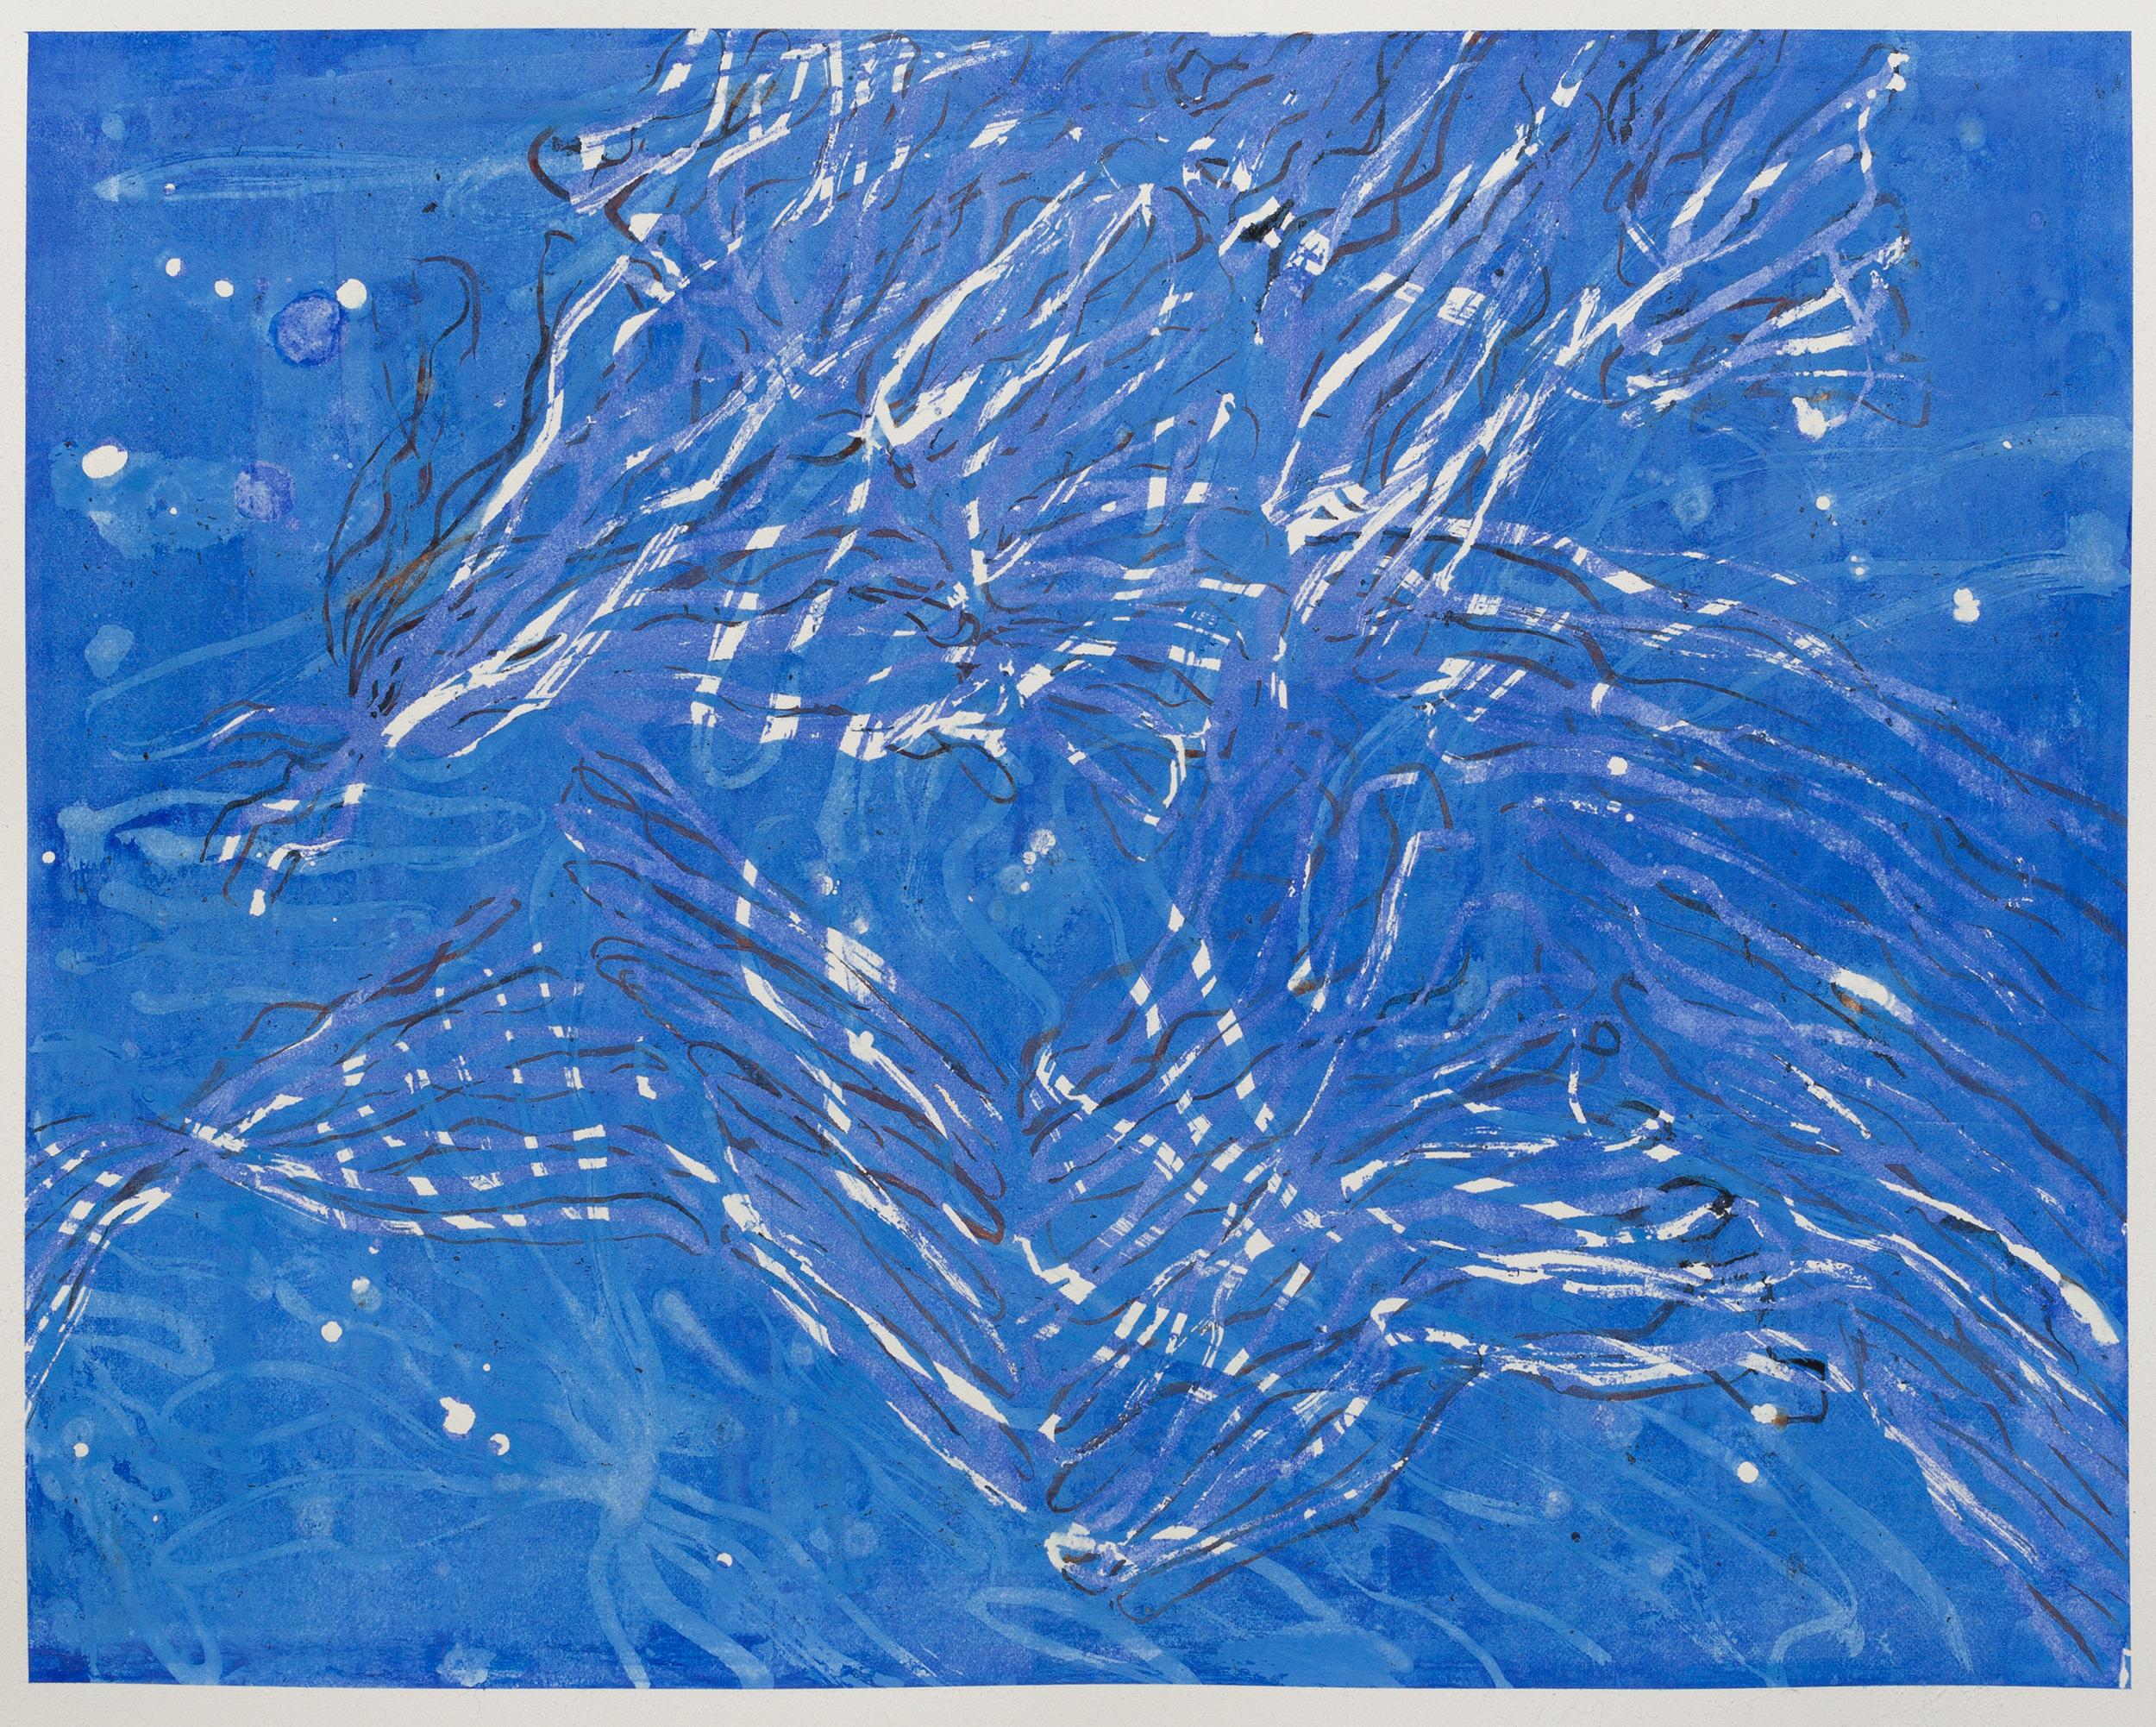 Actuel II - peinture abstraite contemporaine en bleu et blanc gestuelle de la vie marine